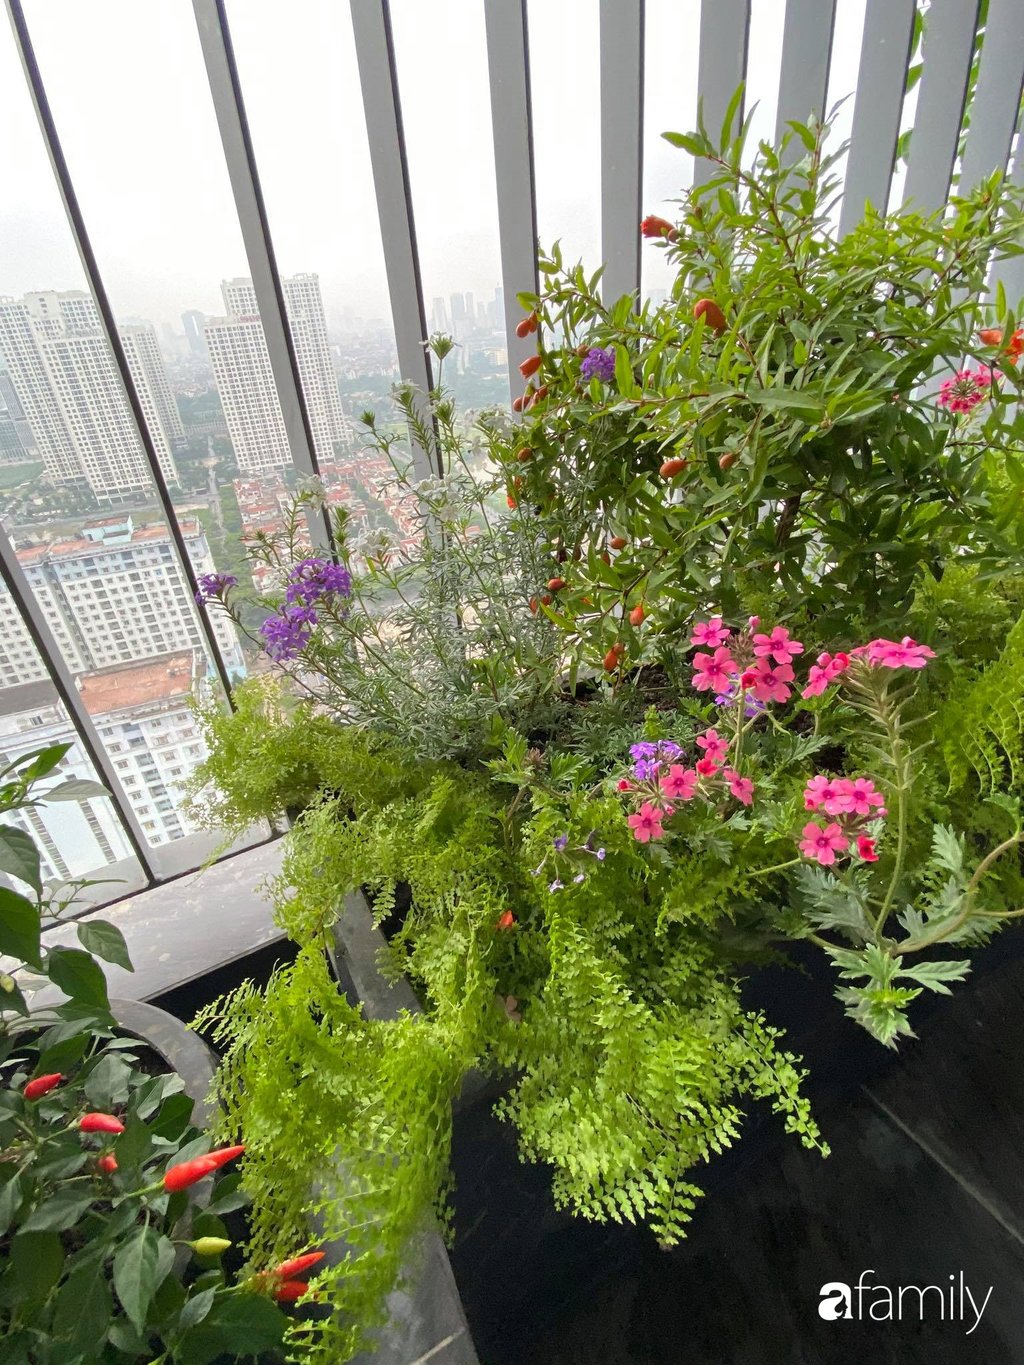 Chị Nhung chăm chút cho từng gốc cây, chậu hoa giúp hai khoảng ban công chính luôn là nơi được các thành viên yêu thích, ngắm nhìn thiên nhiên từ trên tầng cao.